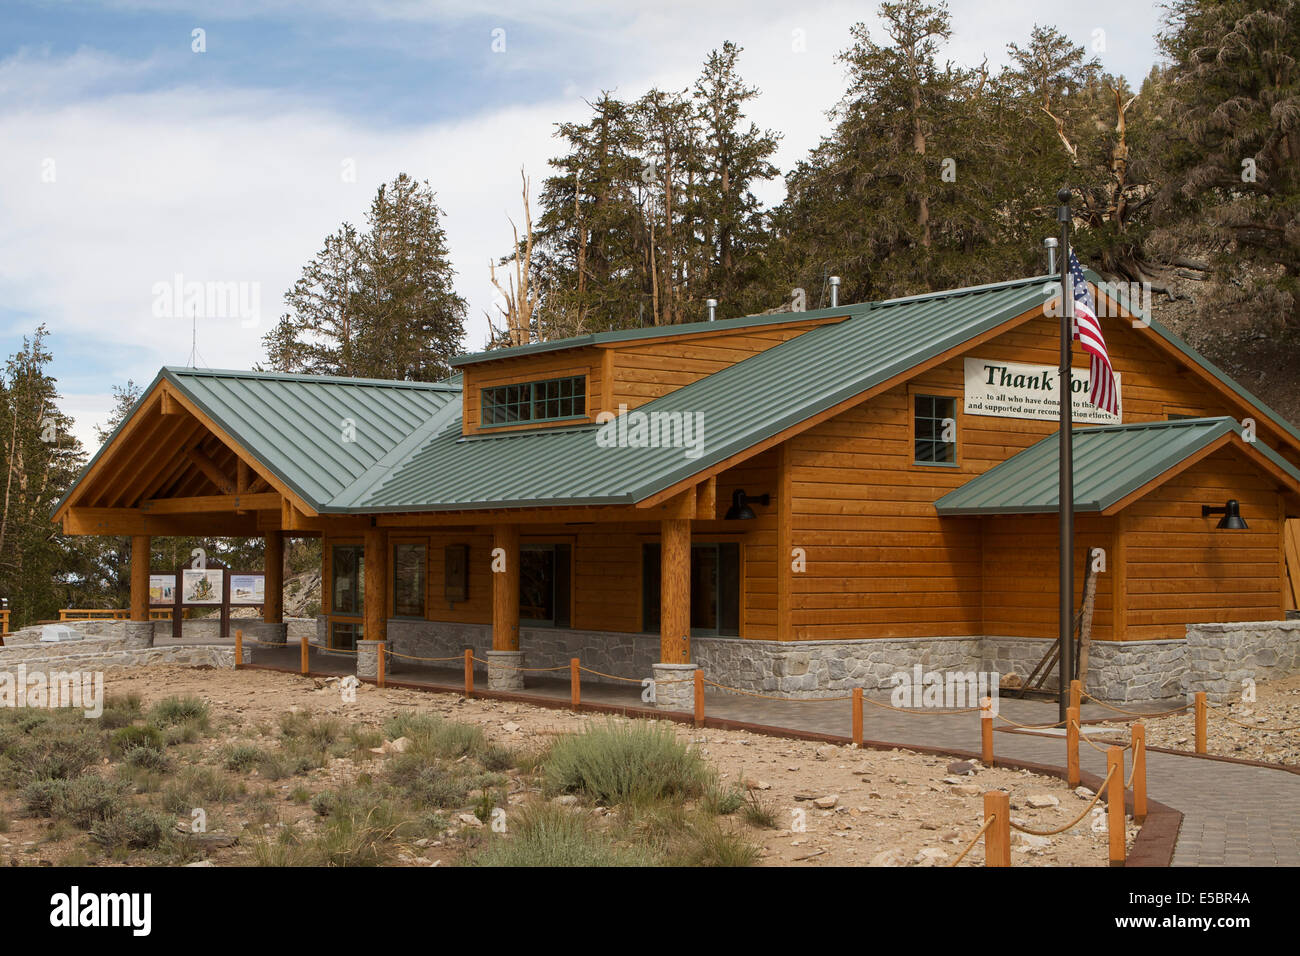 L'schulman grove Ancient Bristlecone Pine Forest Visitor Center de l'Inyo National Forest en Californie Banque D'Images